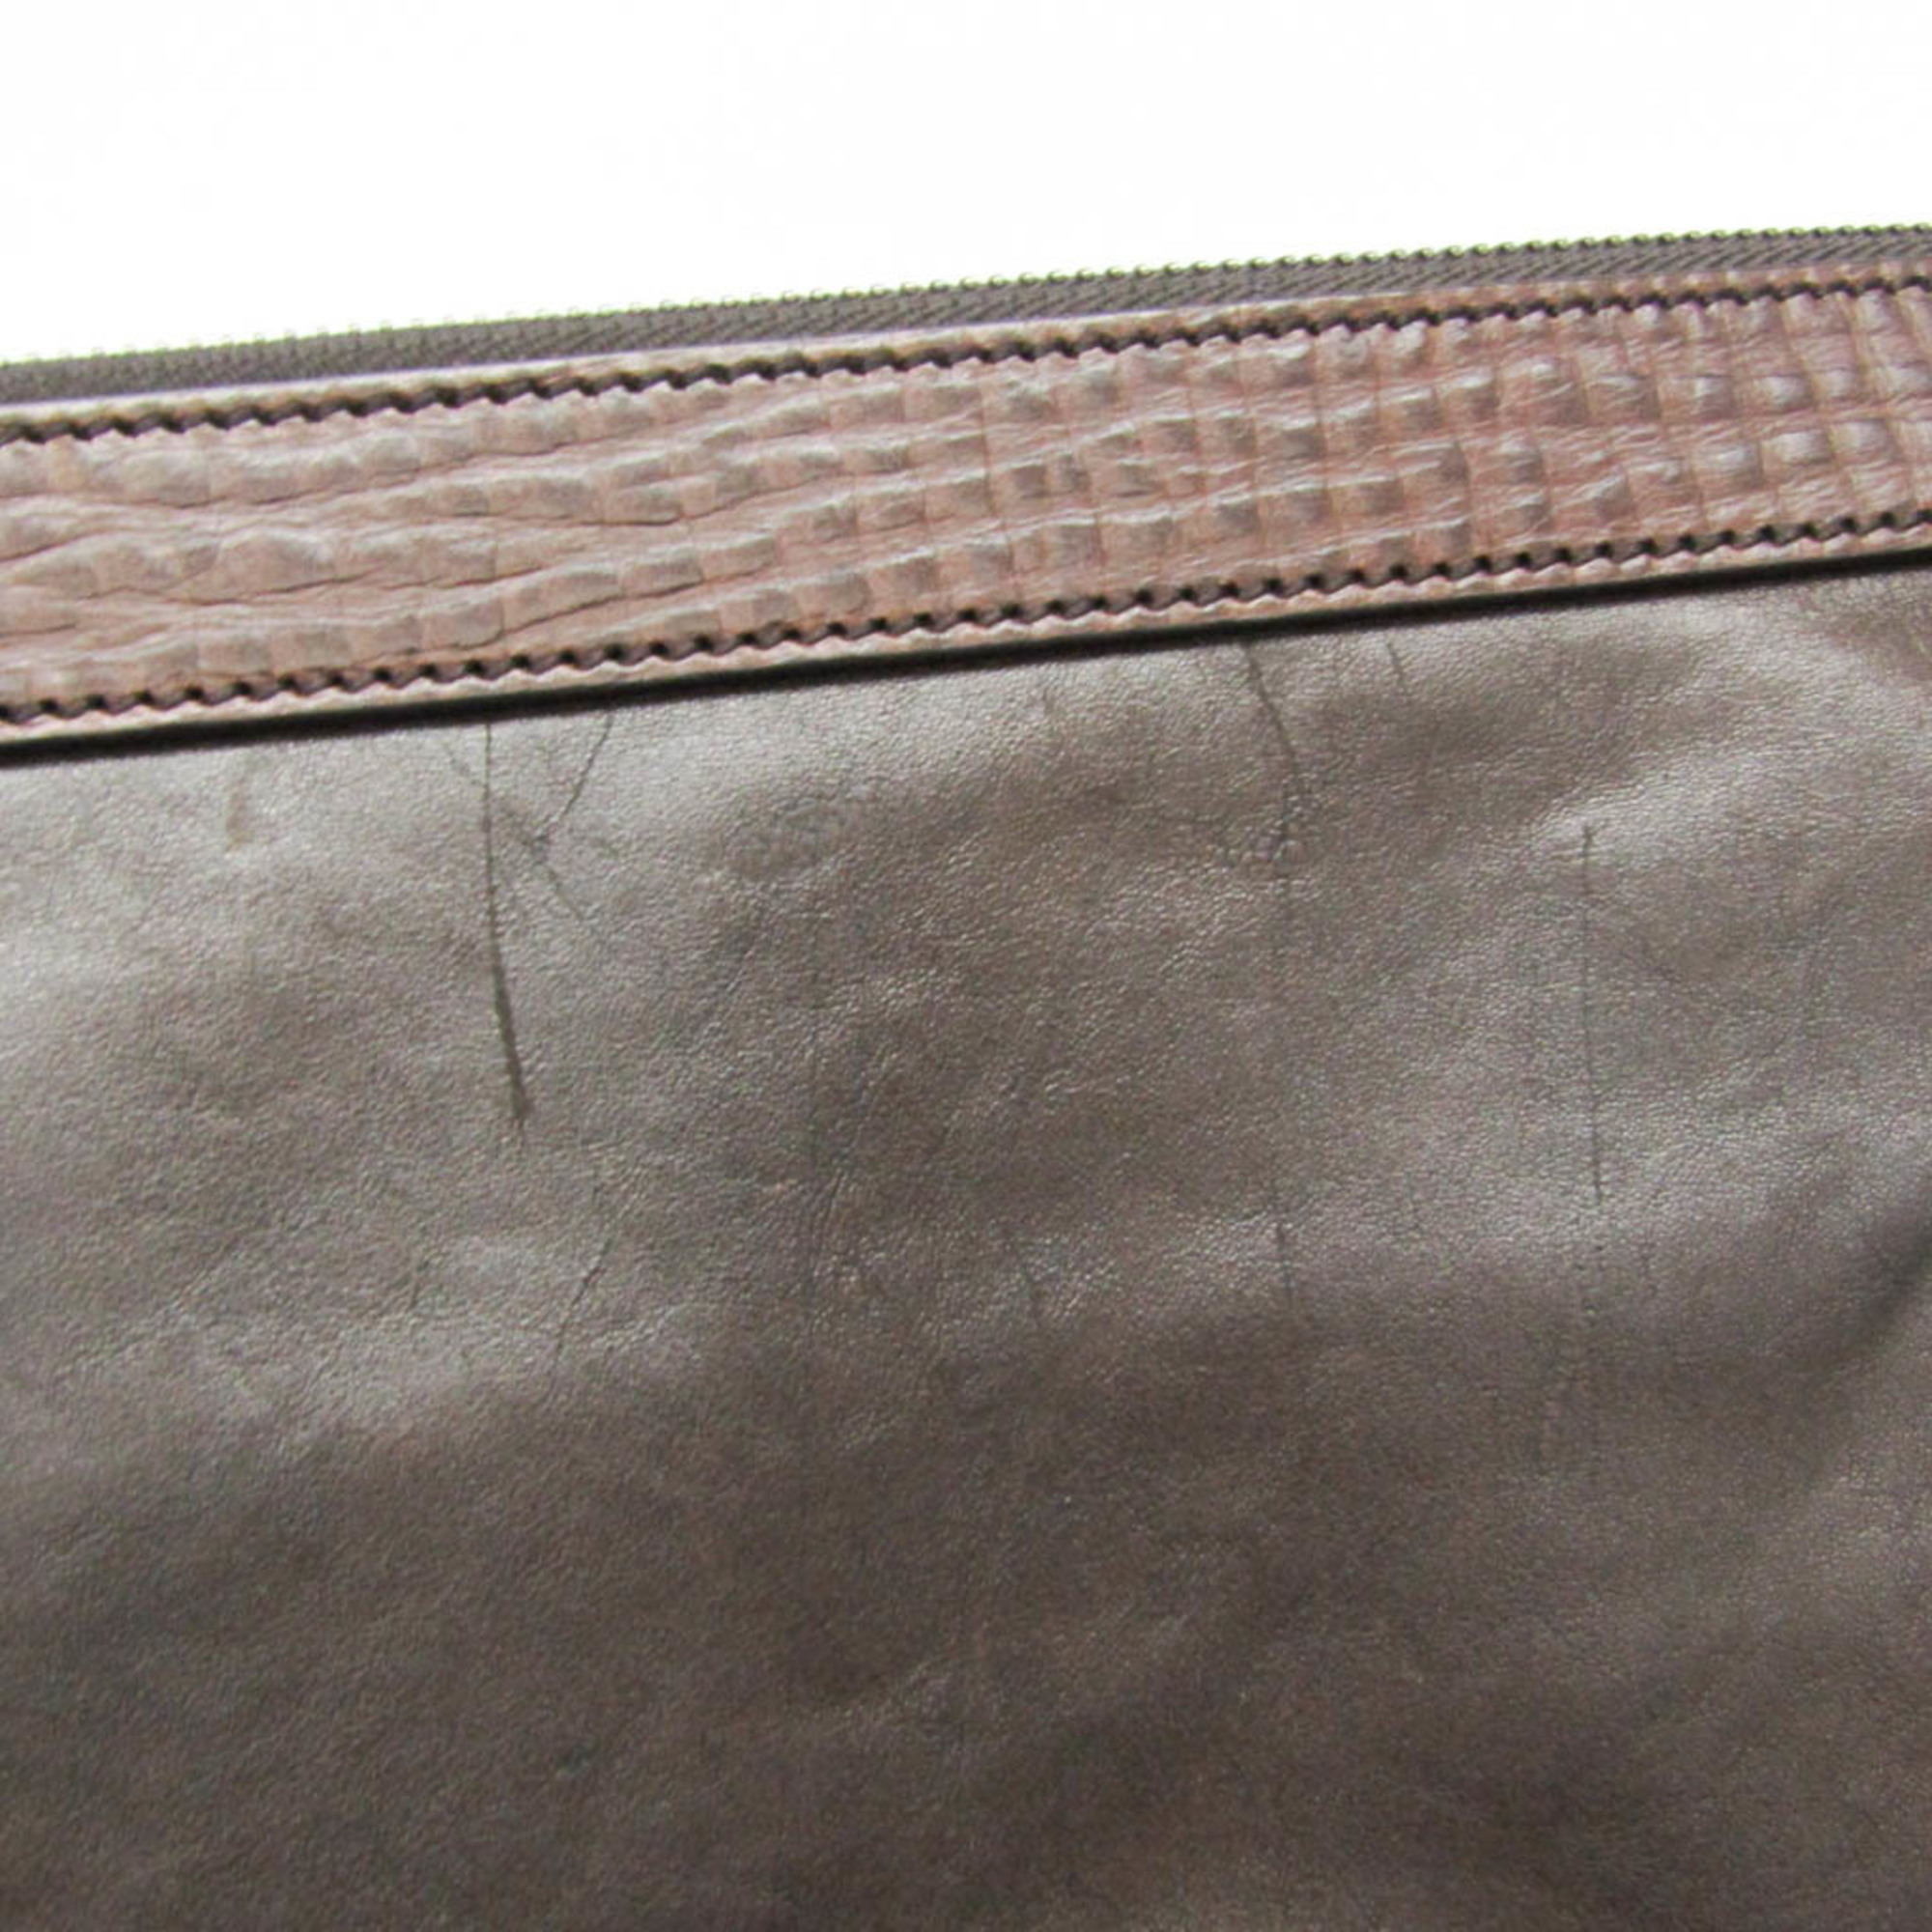 Dolce & Gabbana Men's Leather,Canvas Shoulder Bag Dark Brown,Dark Gray